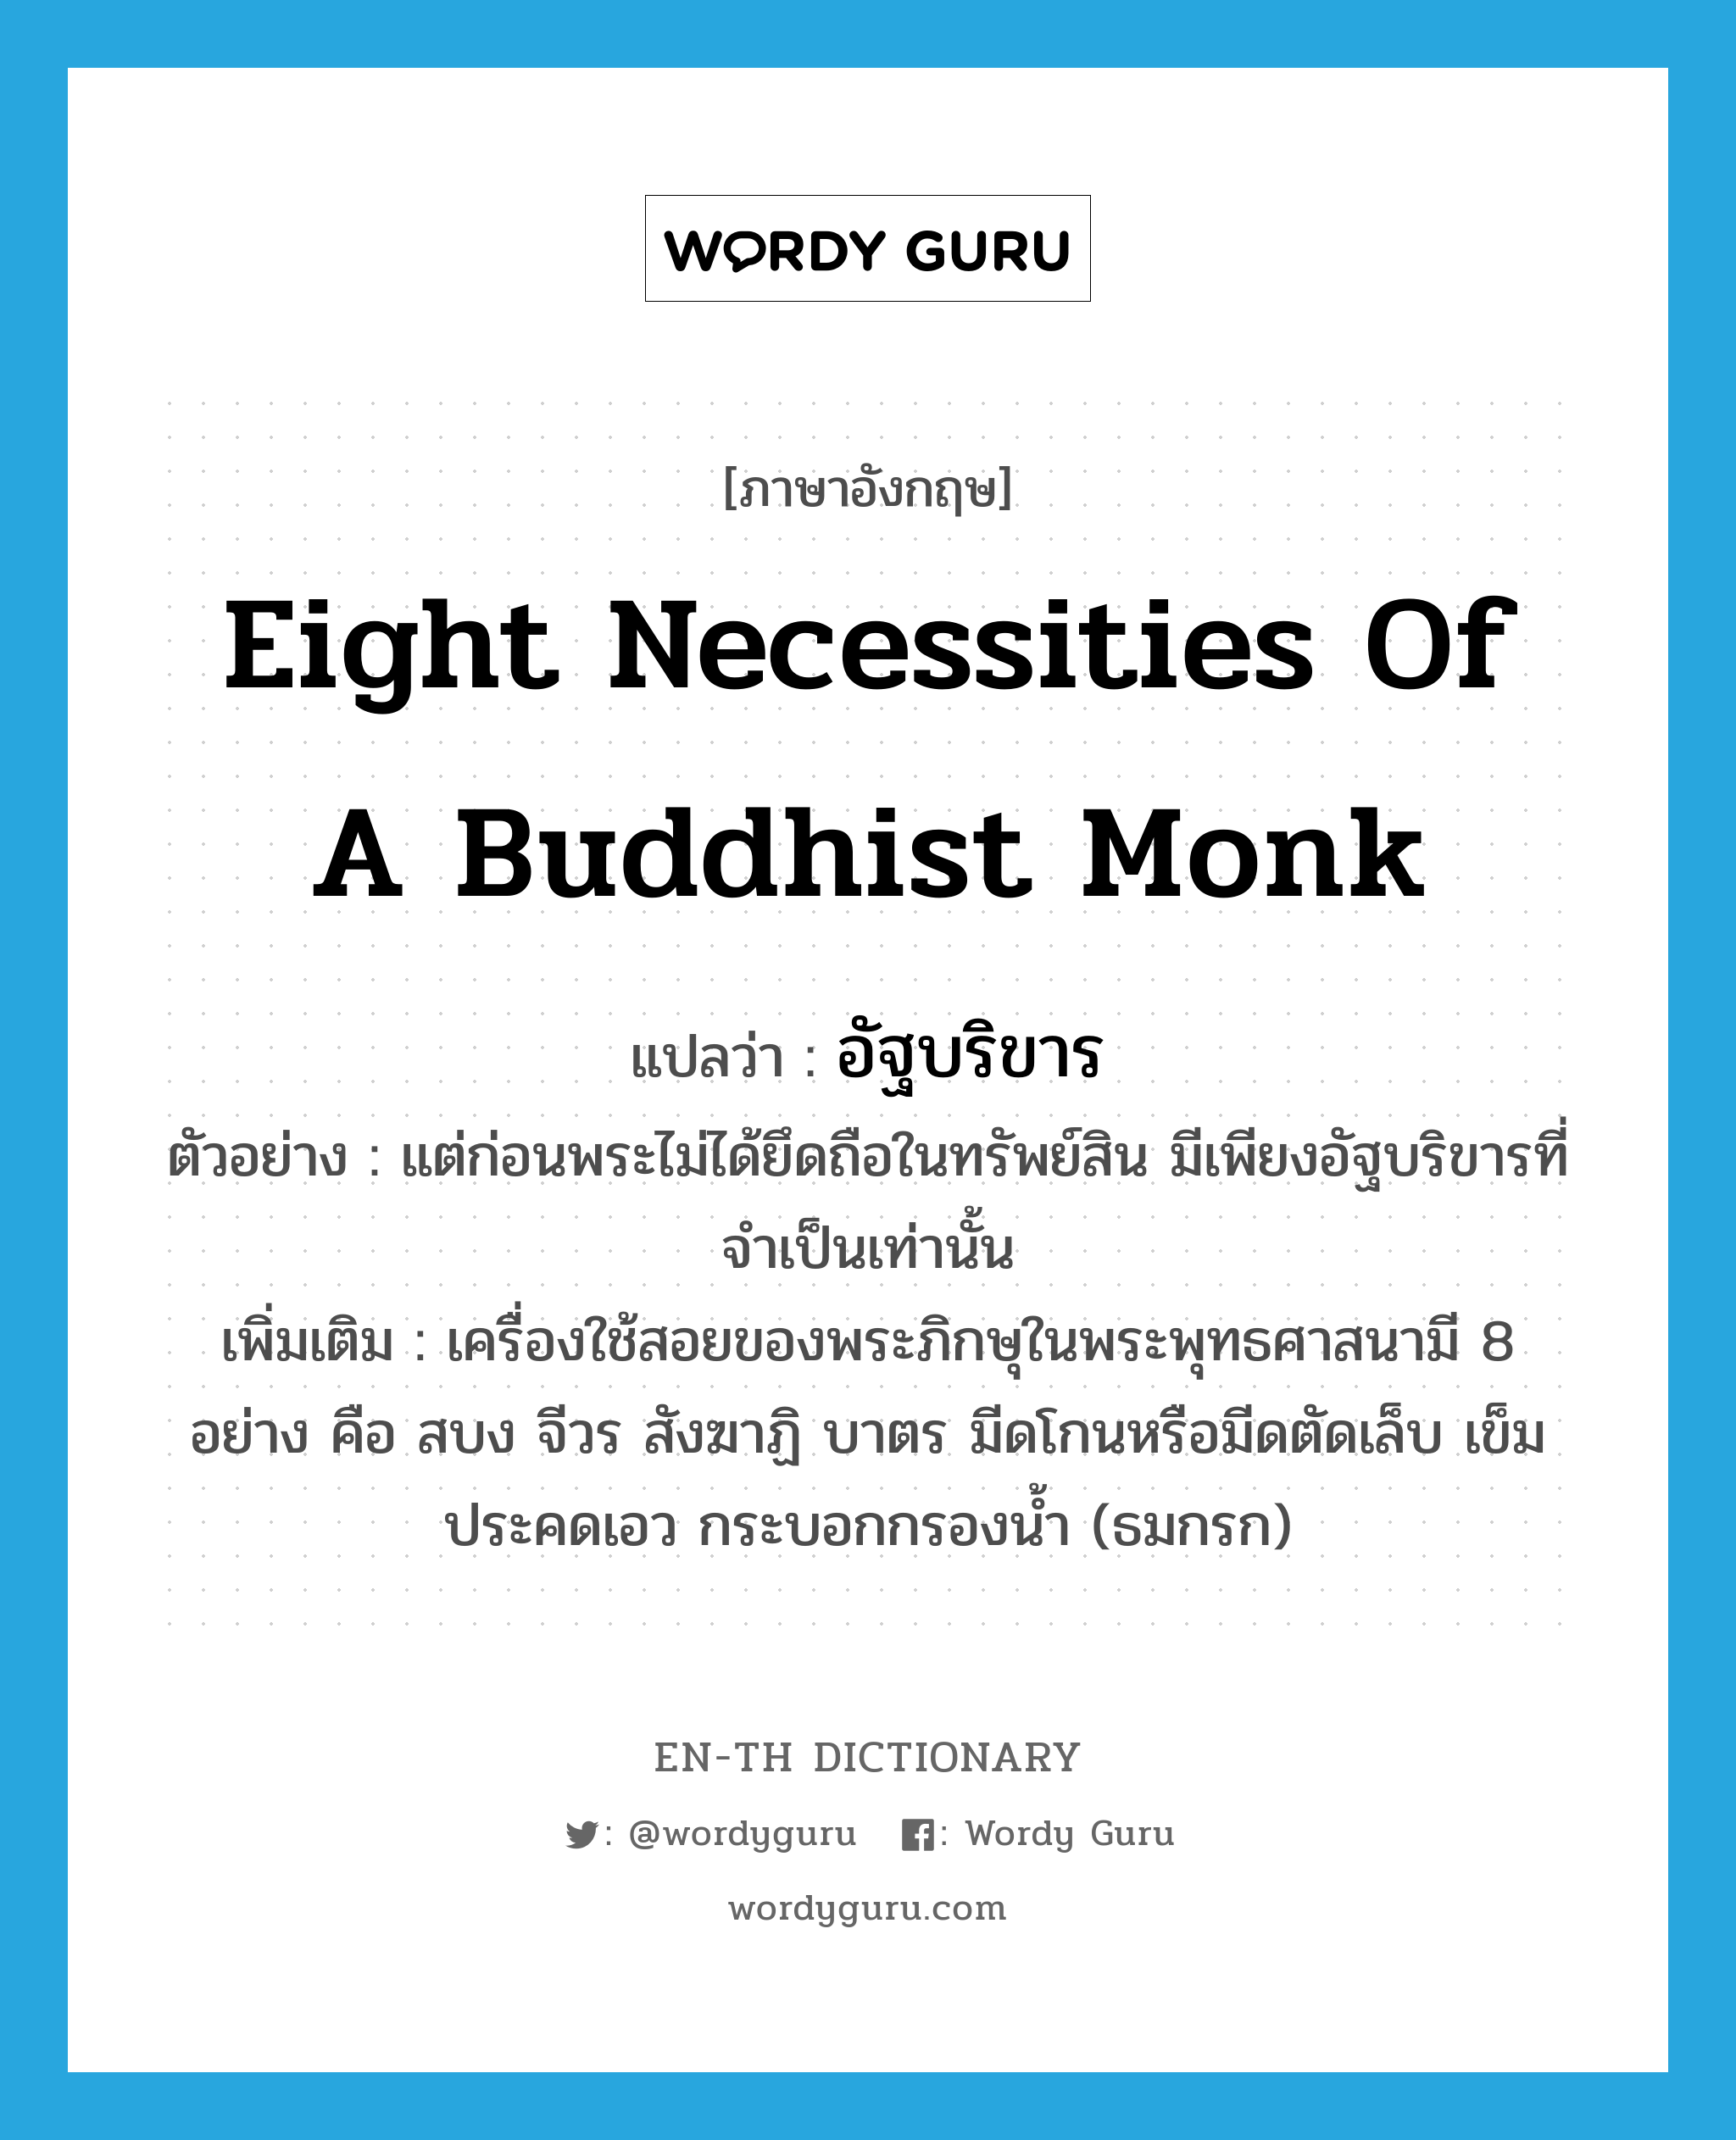 อัฐบริขาร ภาษาอังกฤษ?, คำศัพท์ภาษาอังกฤษ อัฐบริขาร แปลว่า eight necessities of a Buddhist monk ประเภท N ตัวอย่าง แต่ก่อนพระไม่ได้ยึดถือในทรัพย์สิน มีเพียงอัฐบริขารที่จำเป็นเท่านั้น เพิ่มเติม เครื่องใช้สอยของพระภิกษุในพระพุทธศาสนามี 8 อย่าง คือ สบง จีวร สังฆาฏิ บาตร มีดโกนหรือมีดตัดเล็บ เข็ม ประคดเอว กระบอกกรองน้ำ (ธมกรก) หมวด N